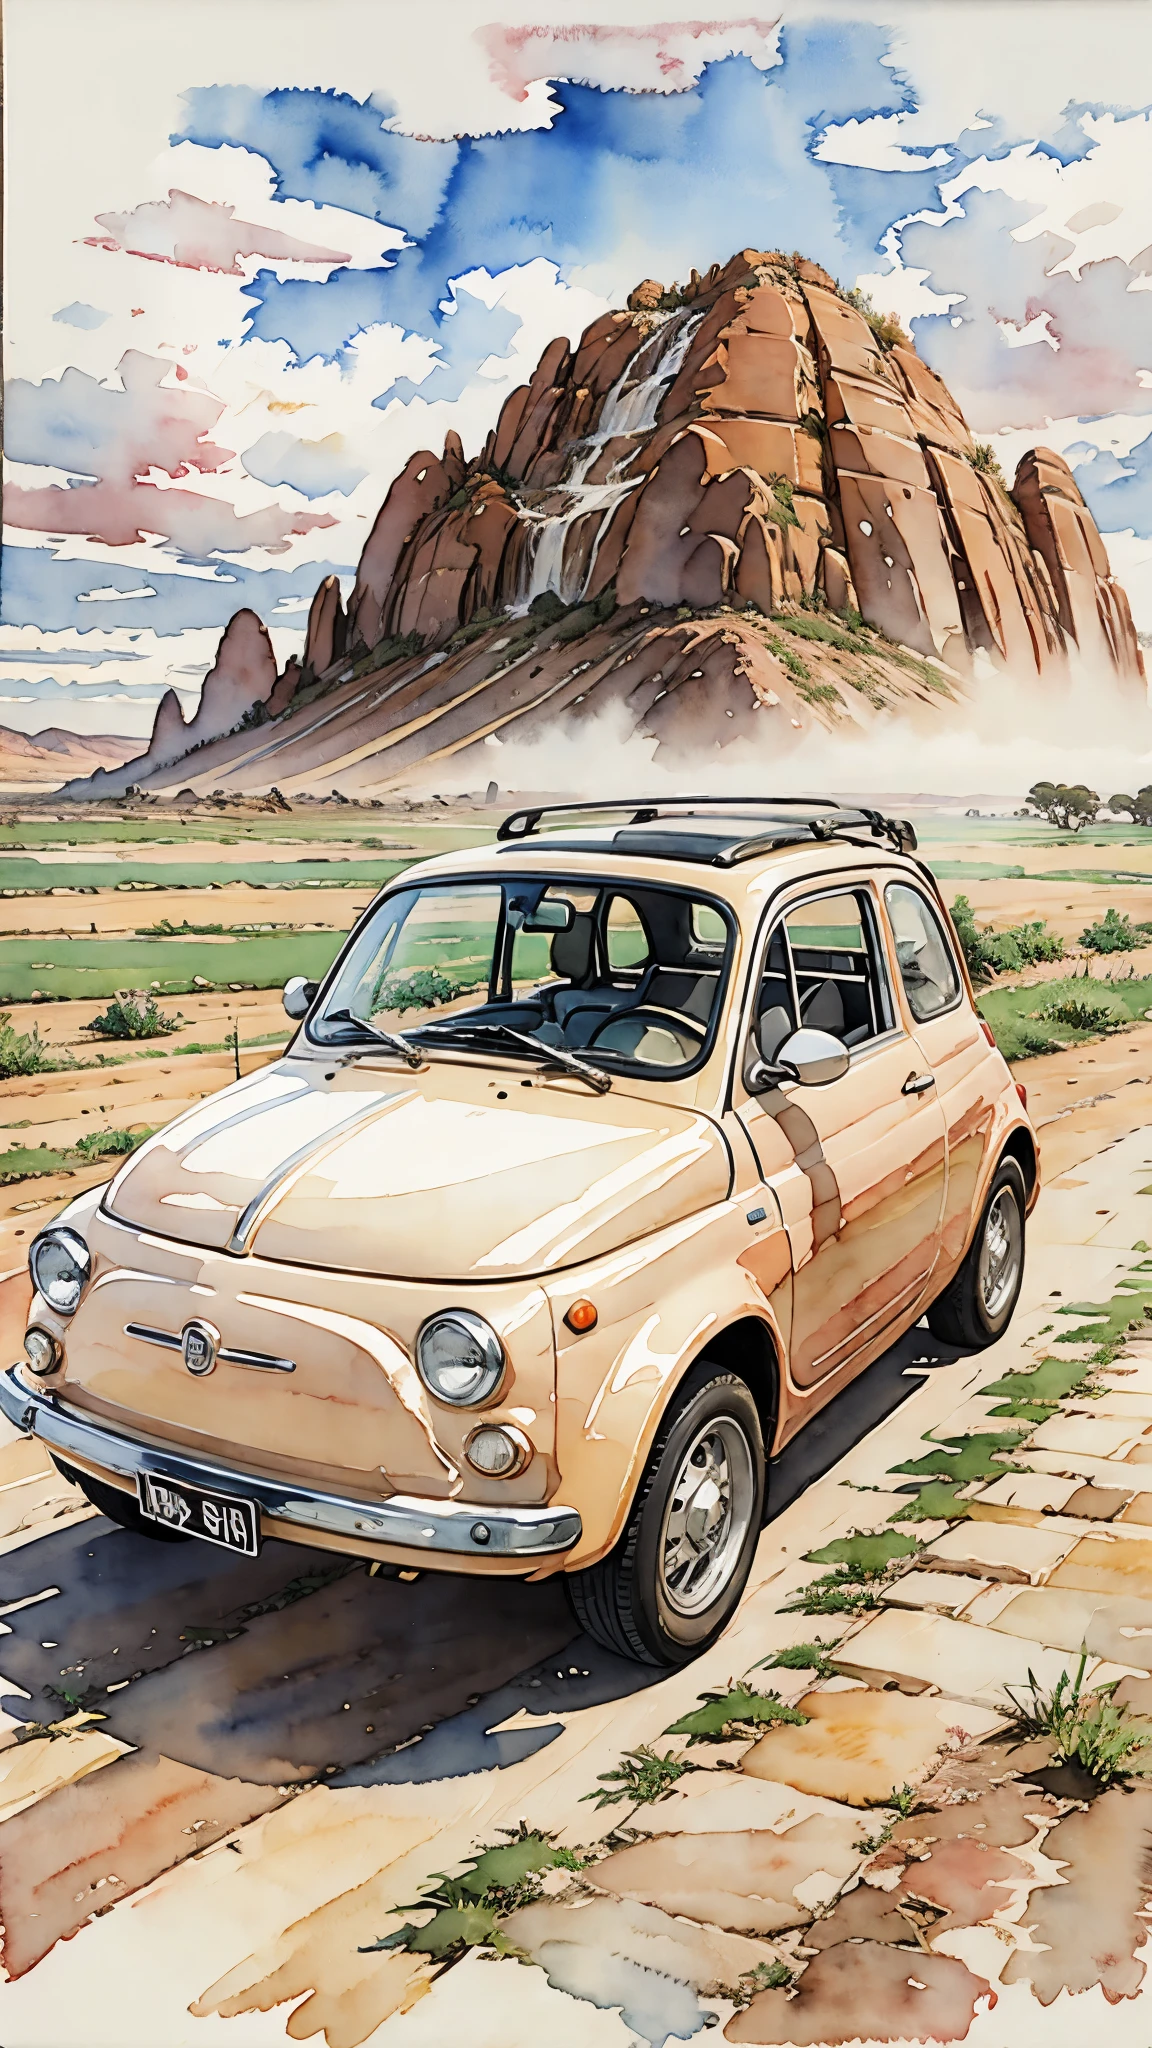 (Meisterwerk:1.2, höchste Qualität),(Sehr detailiert),(((Aquarell))),8K,HINTERGRUND,Cremefarbener Fiat 500,Australien,Ayers Rock,(((Ghibli-Stil))),透明Aquarell